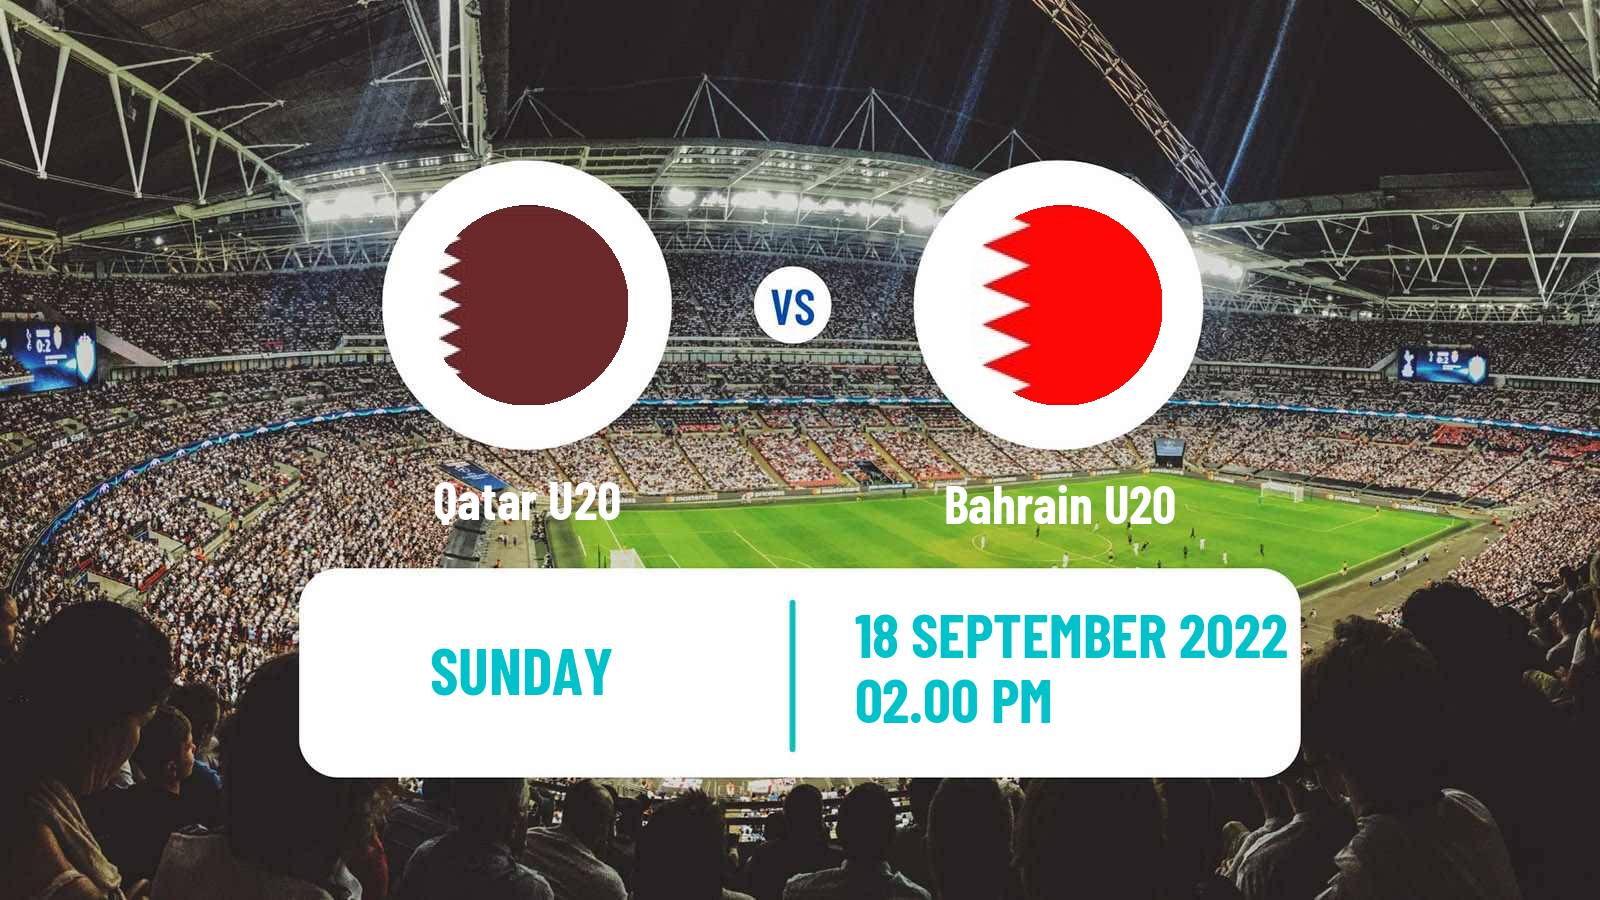 Soccer AFC Championship U20 Qatar U20 - Bahrain U20